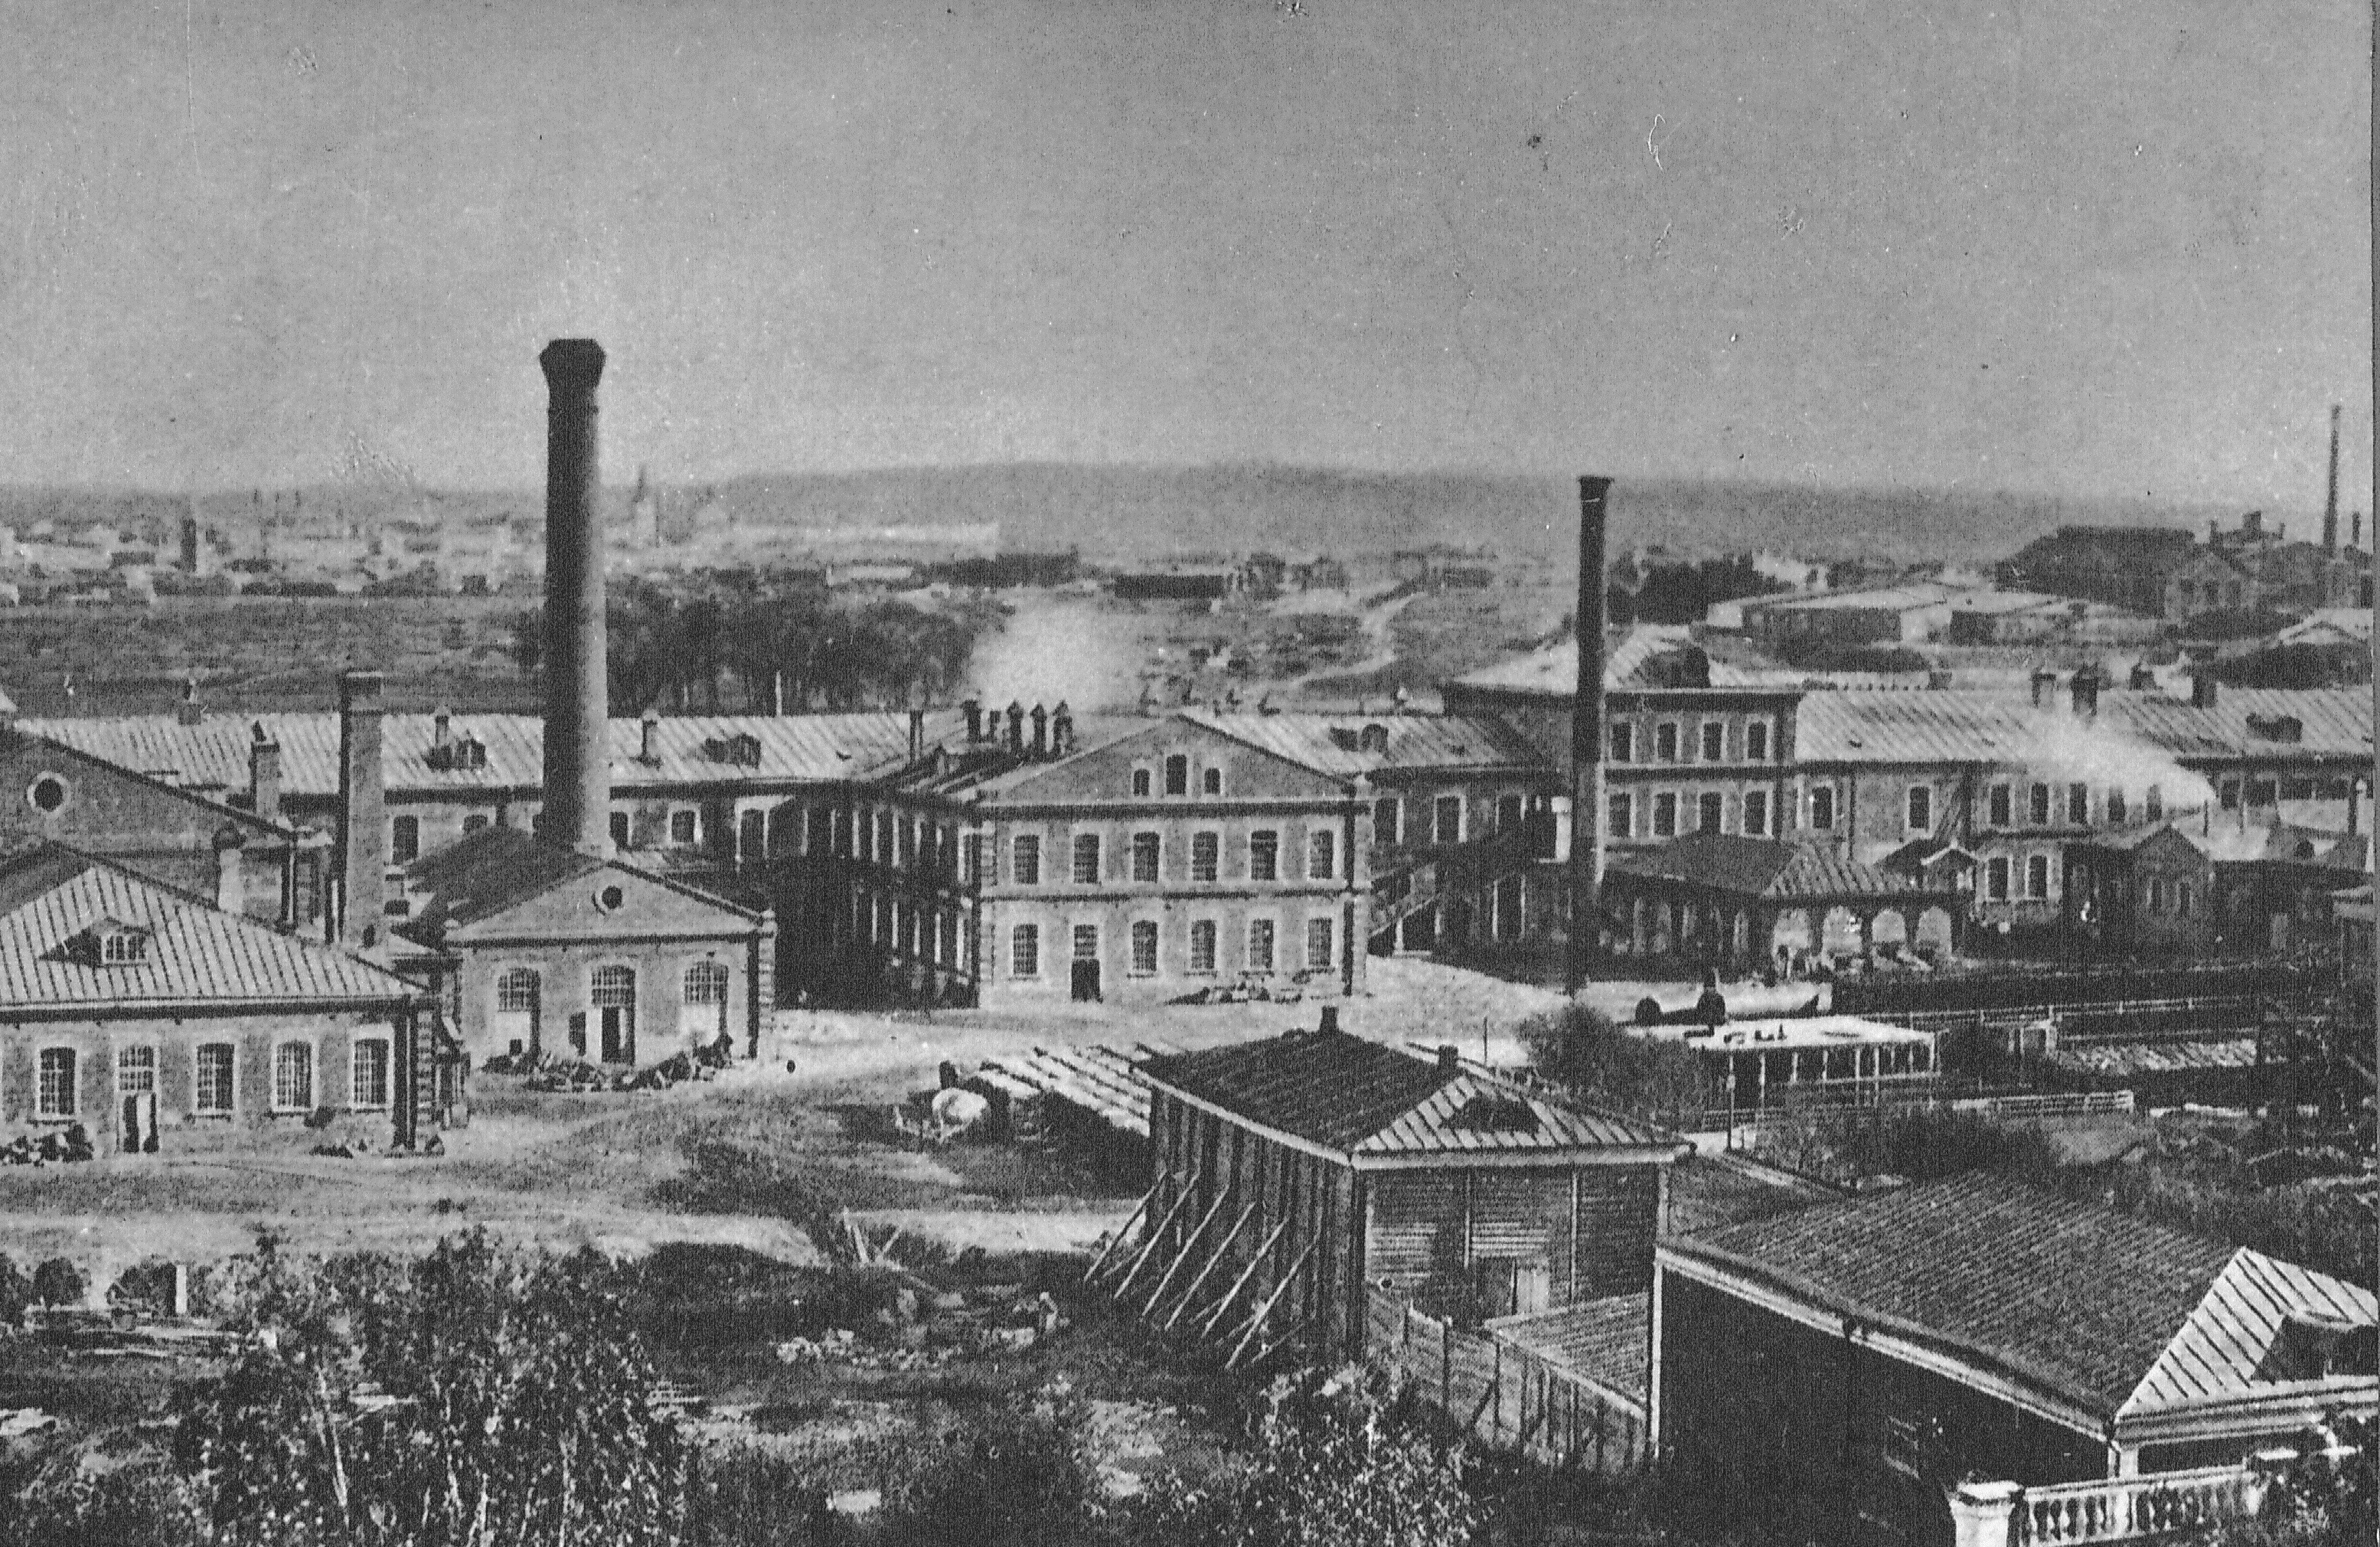 Фабрика 18 века